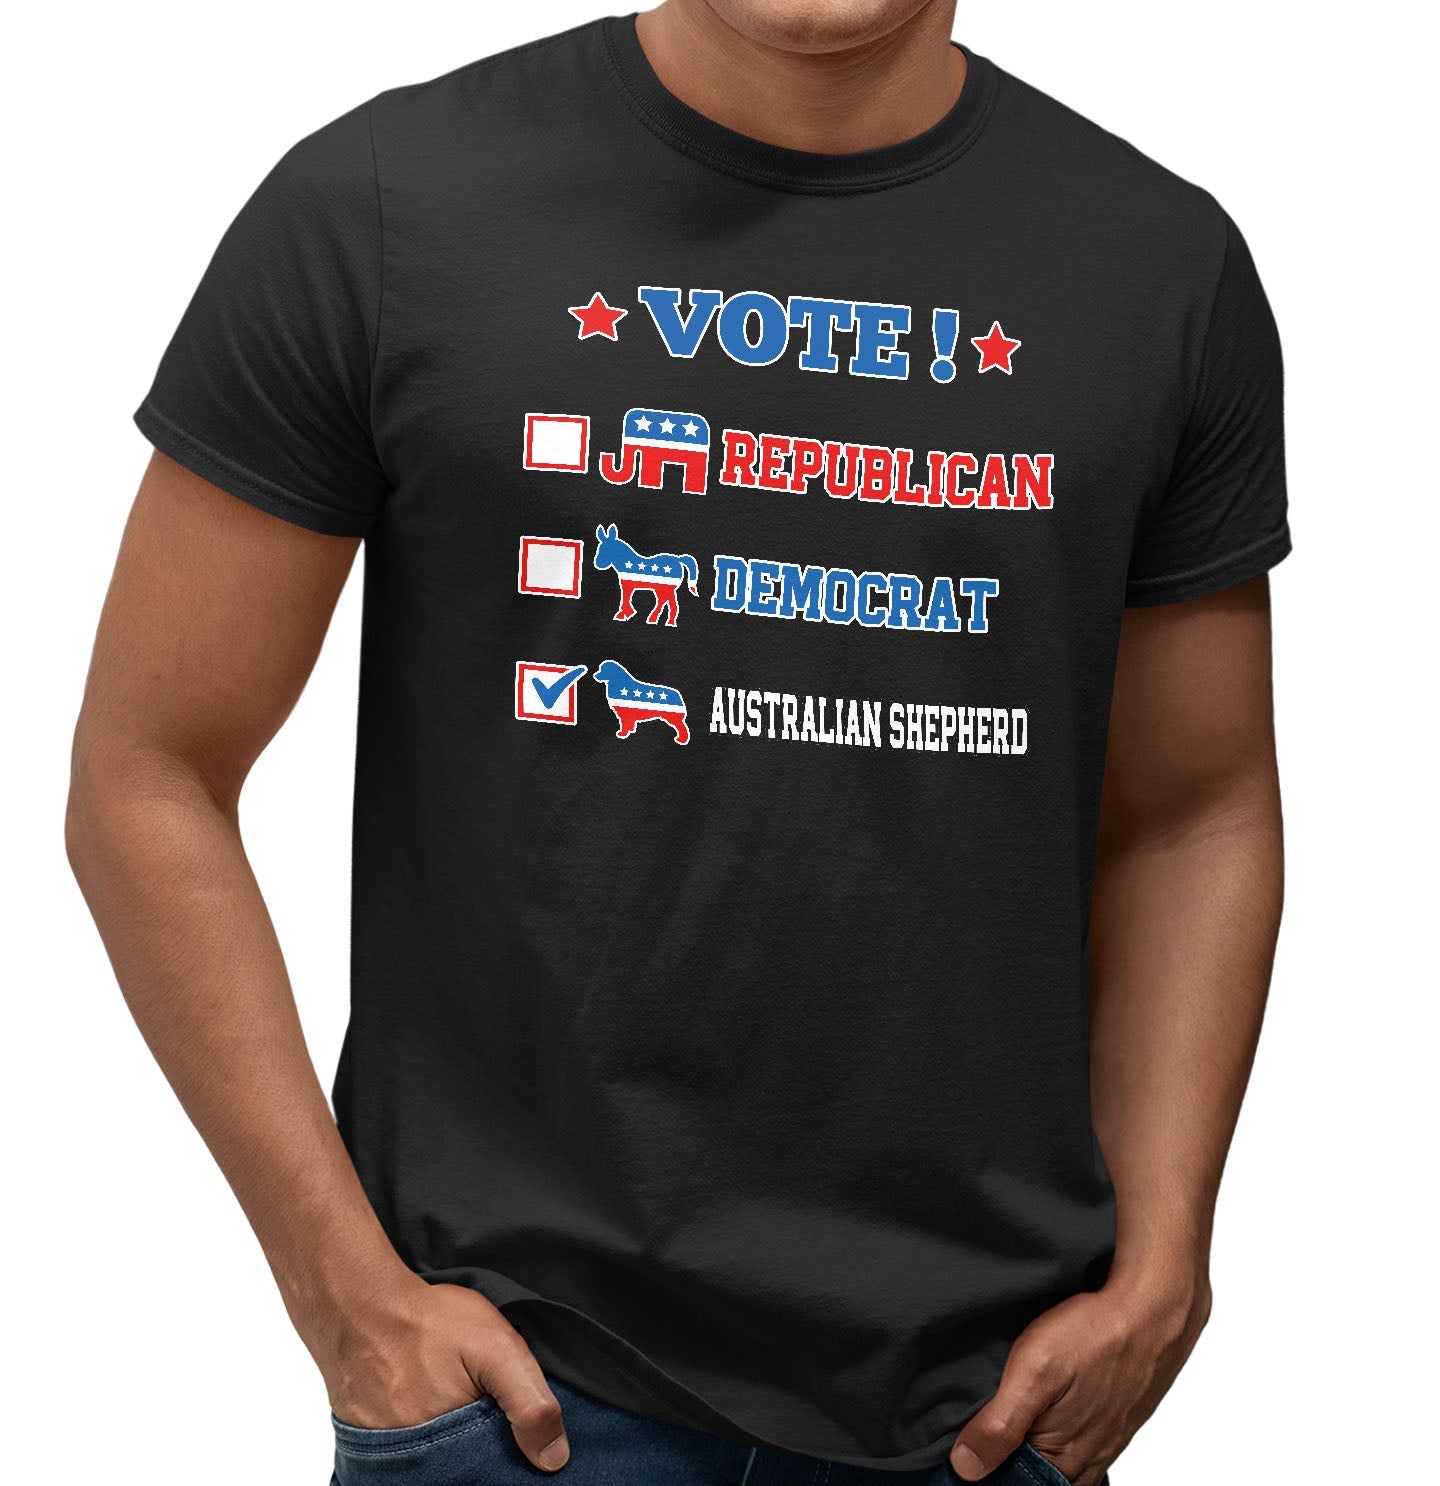 Vote for the Australian Shepherd - Adult Unisex T-Shirt